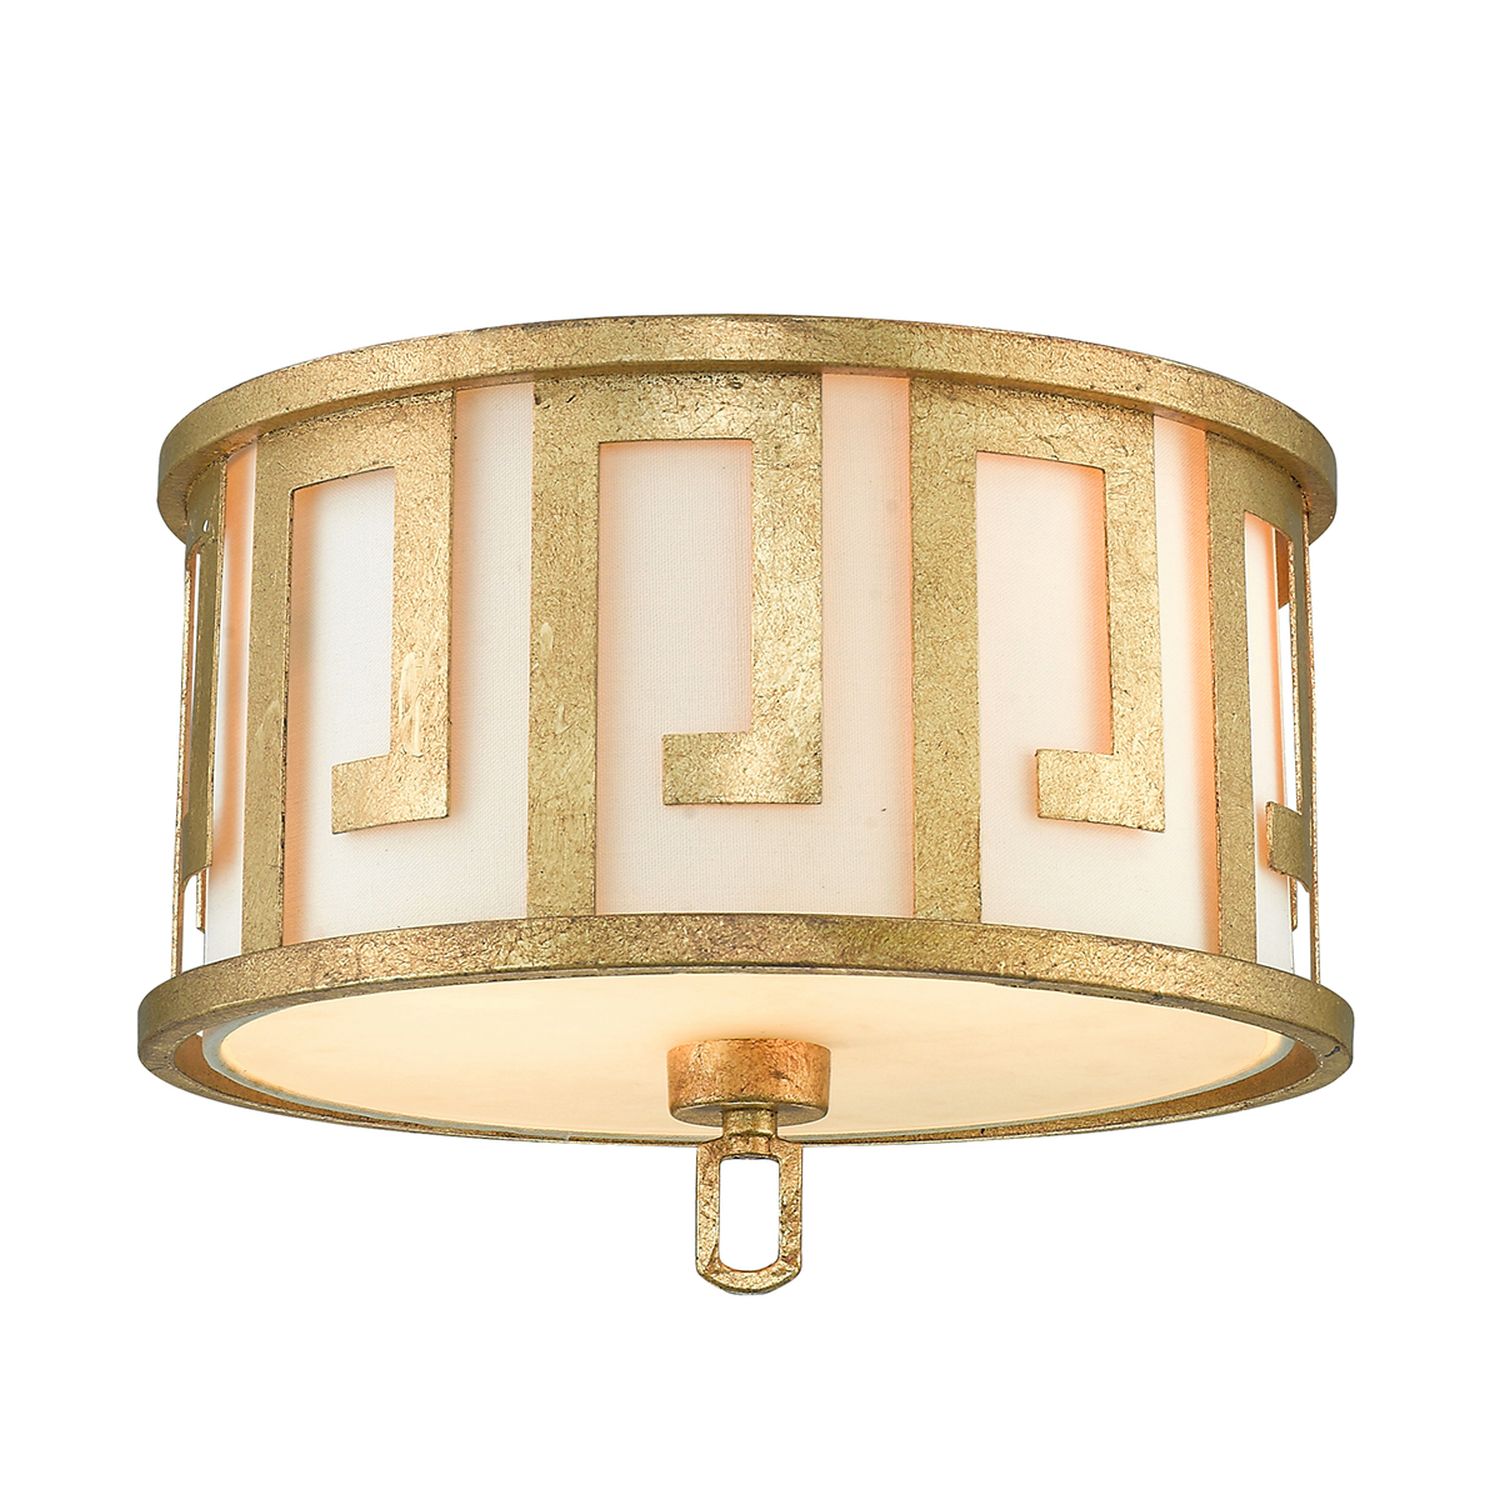 Deckenlampe Vintage Mediterran in Creme Gold AIROSO